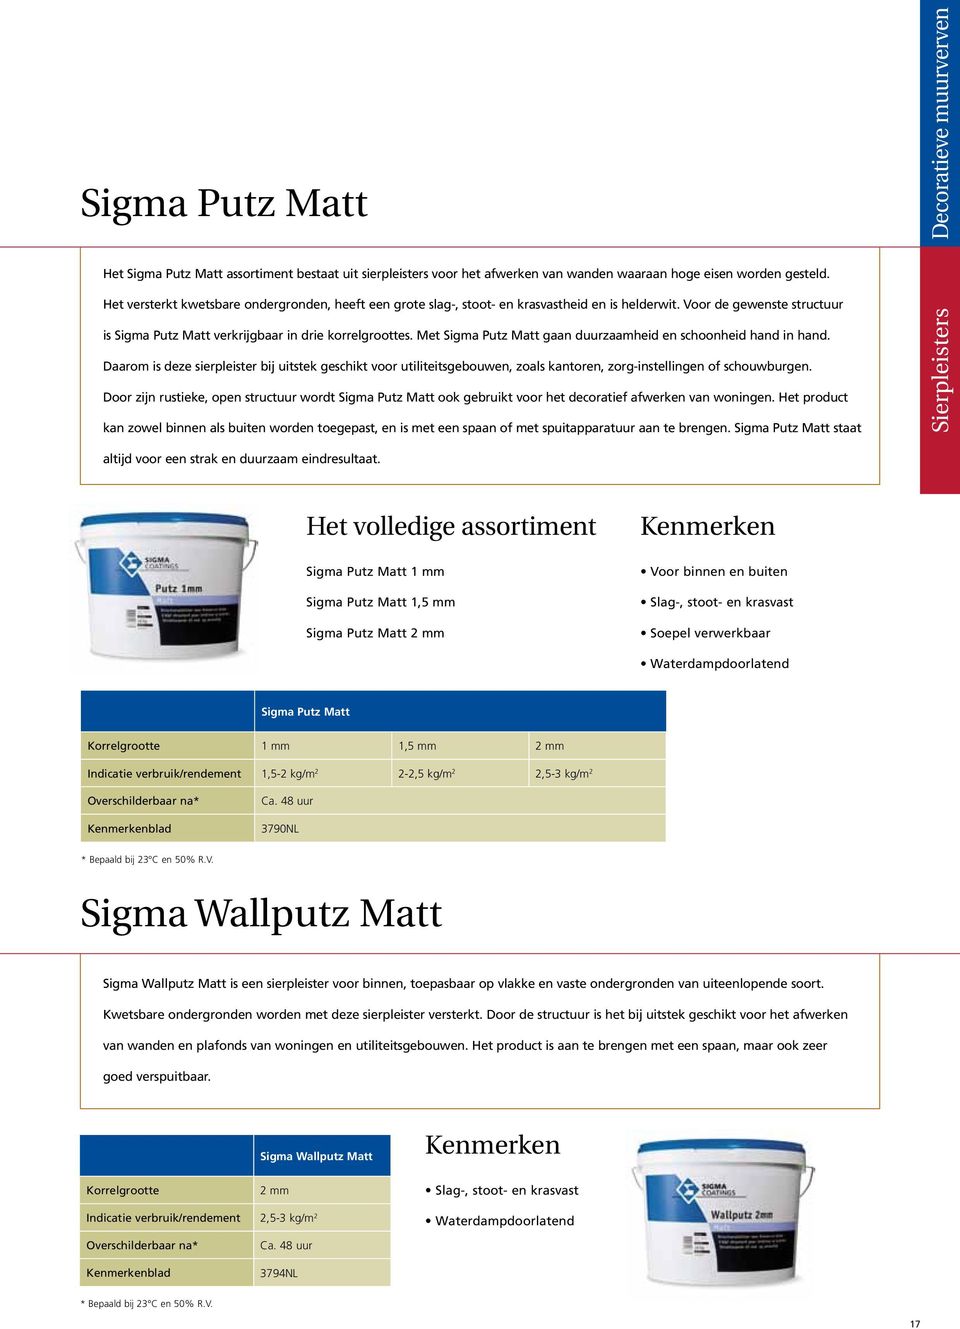 Met Sigma Putz Matt gaan duurzaamheid en schoonheid hand in hand. Daarom is deze sierpleister bij uitstek geschikt voor utiliteitsgebouwen, zoals kantoren, zorg-instellingen of schouwburgen.